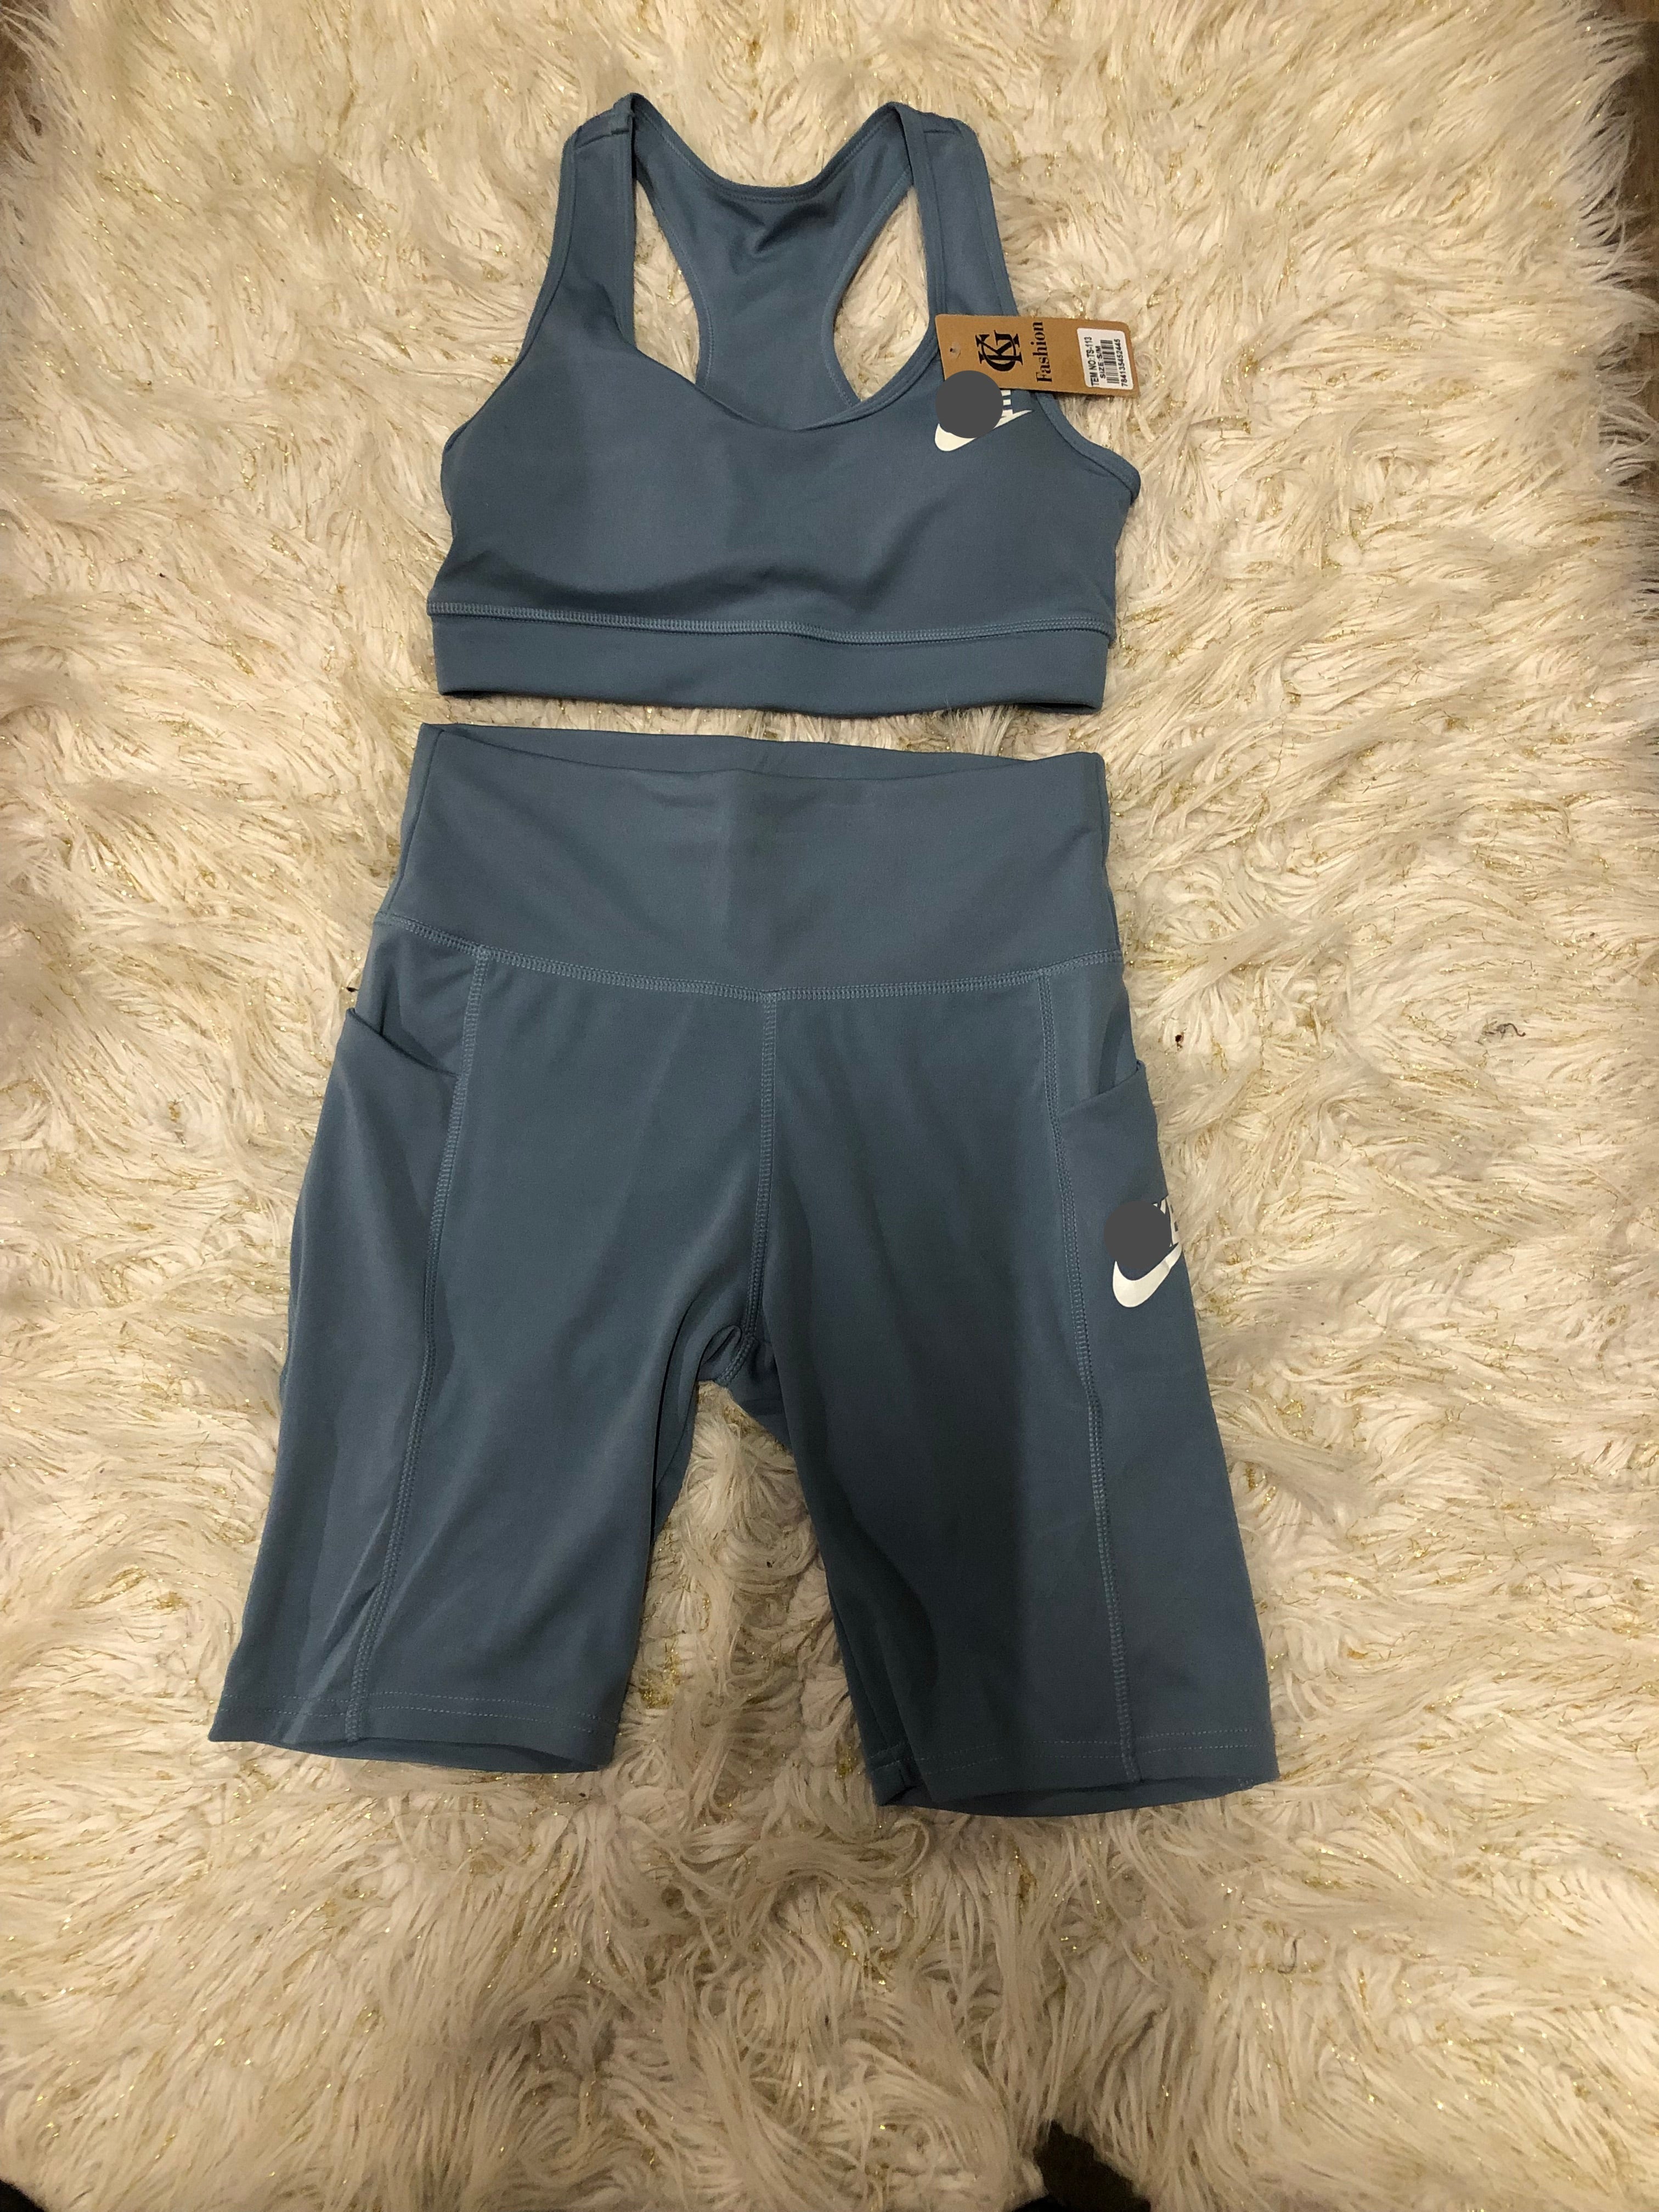 Woman Nike 2Pc Racer Back Biker Short Set Size S/M – Sherri's New